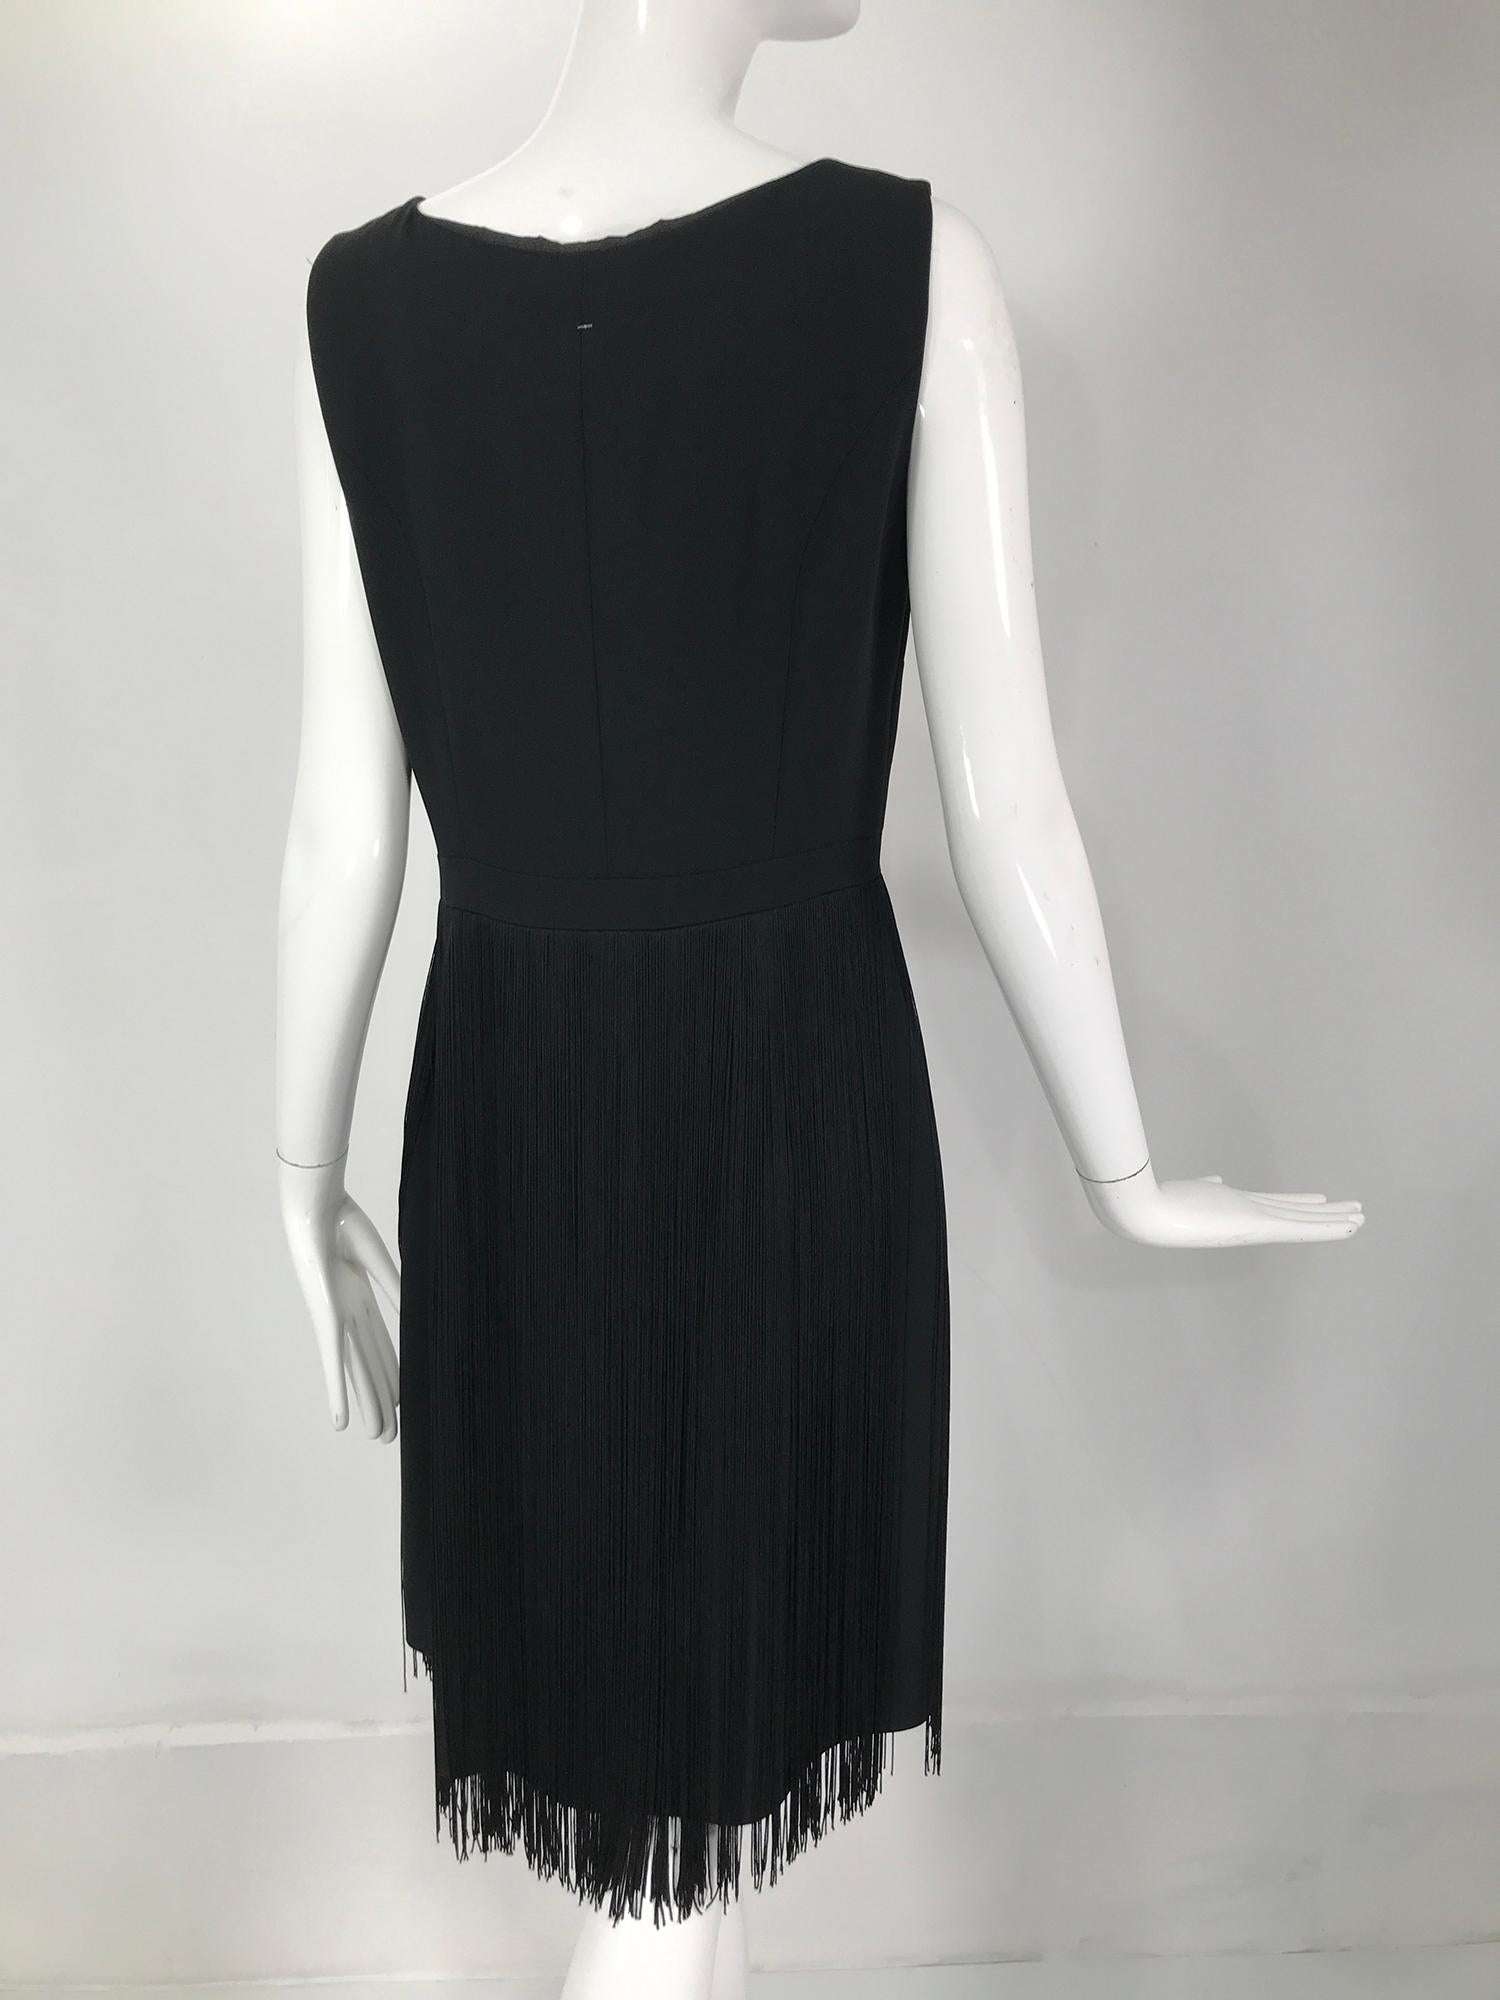 Moschino Sleeveless Black Crepe Bow Waist Fringe Skirt Dress 1990s For Sale 3